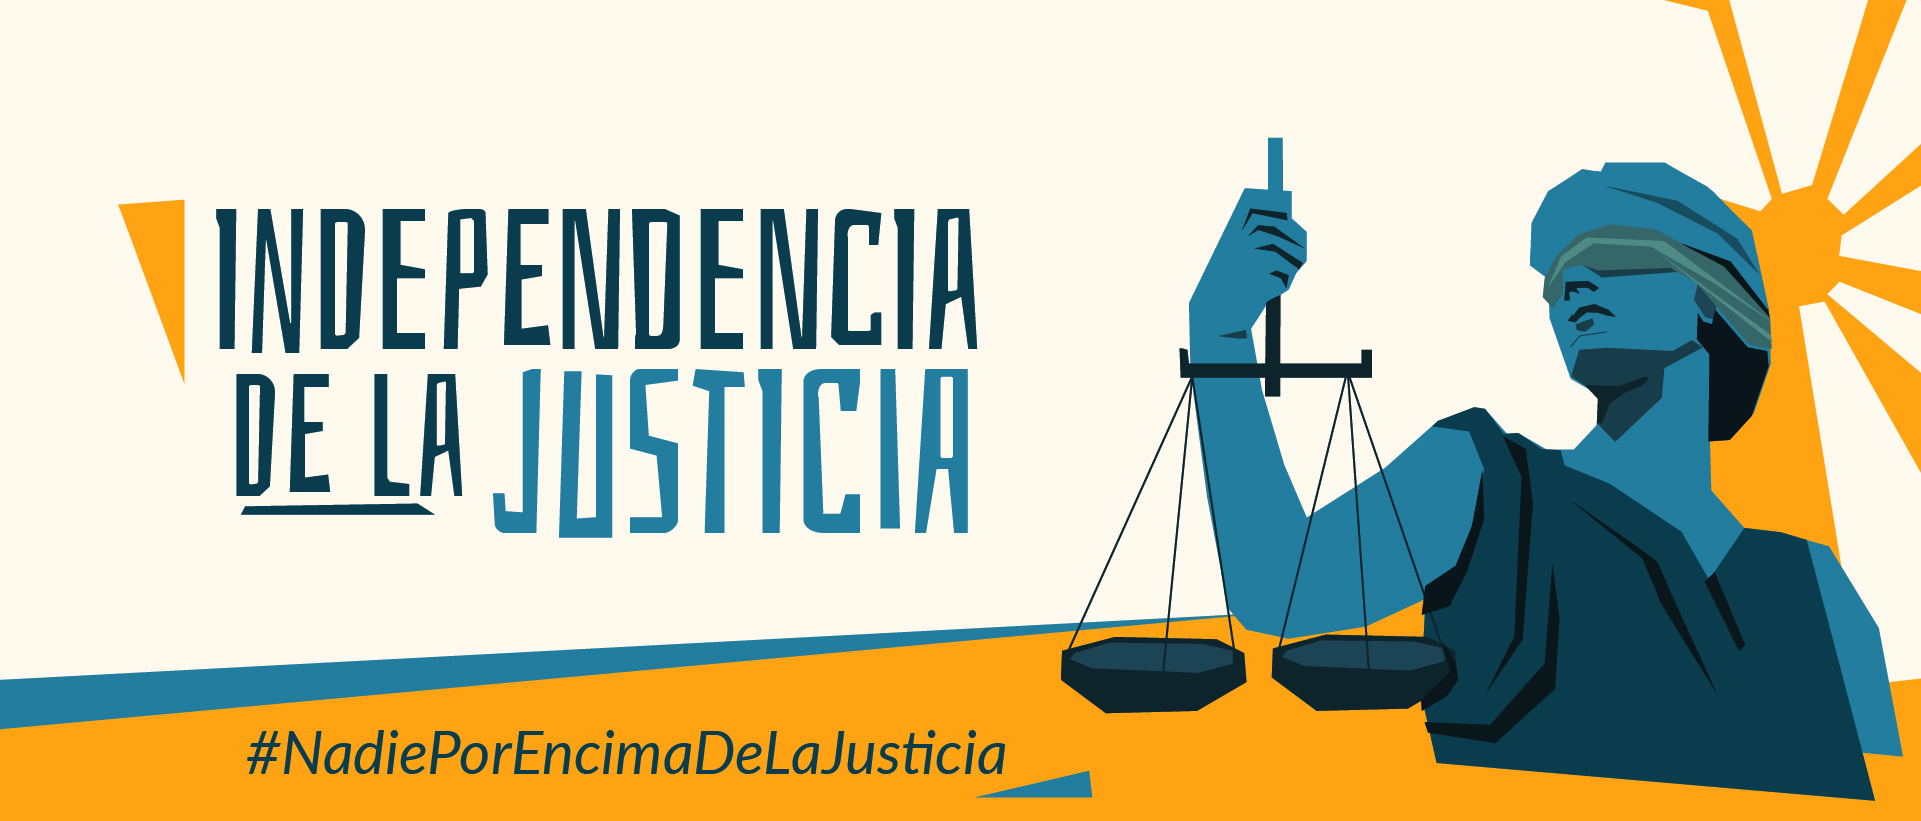 CCAJAR og FSCPP er blant organisasjonene som har samlet seg om kampanjen "Independencia de la Justicia" ("Et uavhengig rettsystem"). Initiativet oppstod som følge av de demokratiske innskrenkningene under president Duque.